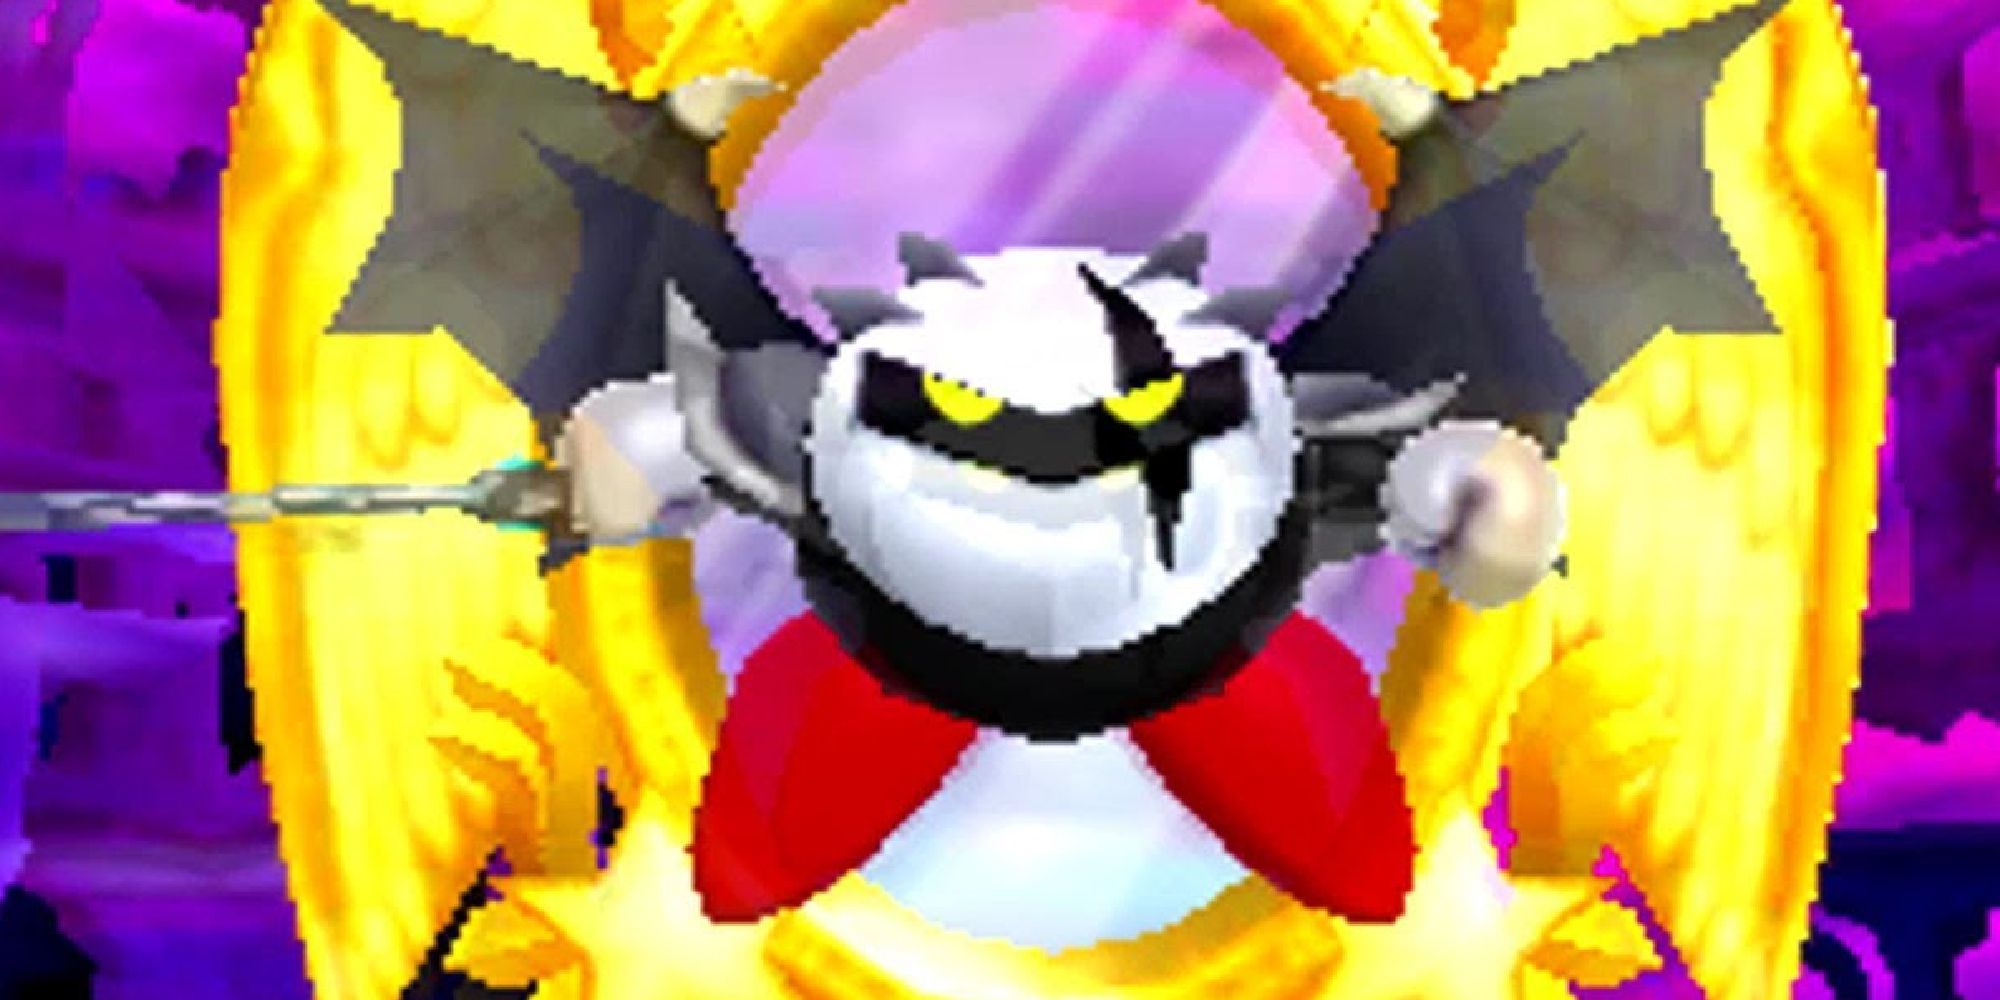 Dark Meta Knight appearing as a boss in Kirby Triple Deluxe